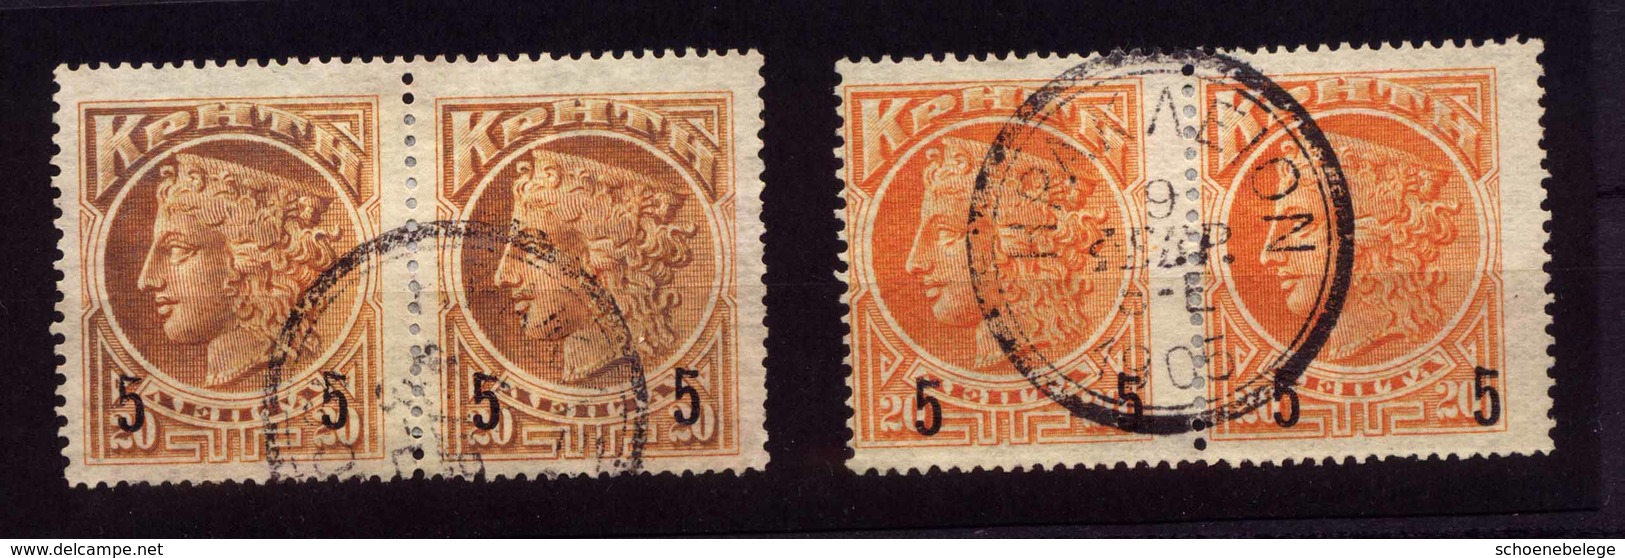 A6270) Kreta Crete Überdruckausgabe 1905 2 Paare Gestempelt Used - Kreta